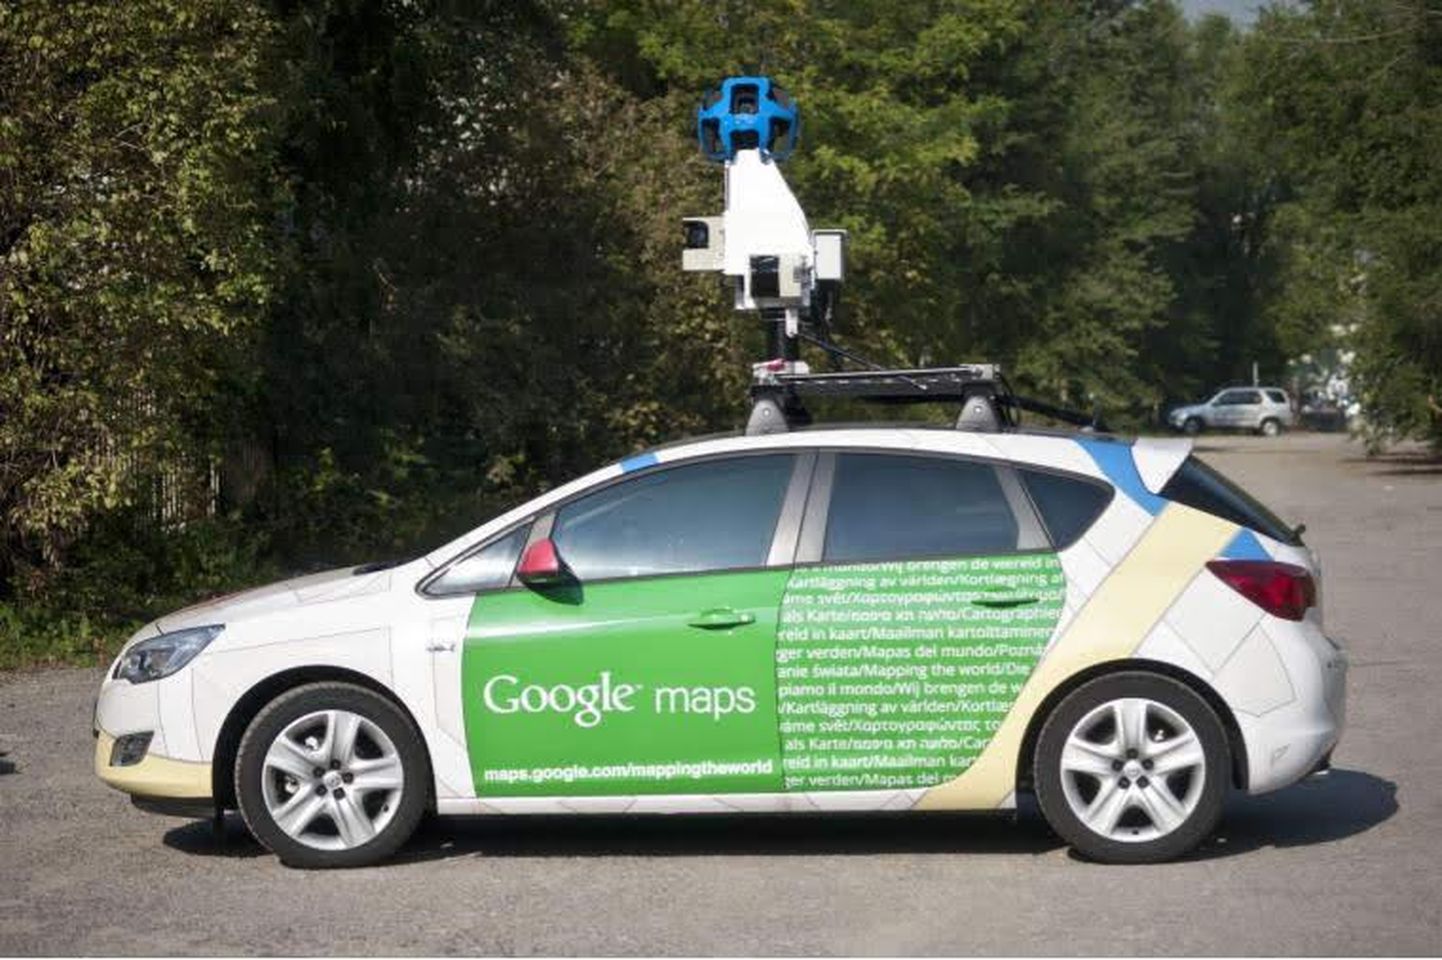 Google’i kaameratega varustatud autod teevad Eestile taas tiiru peale.